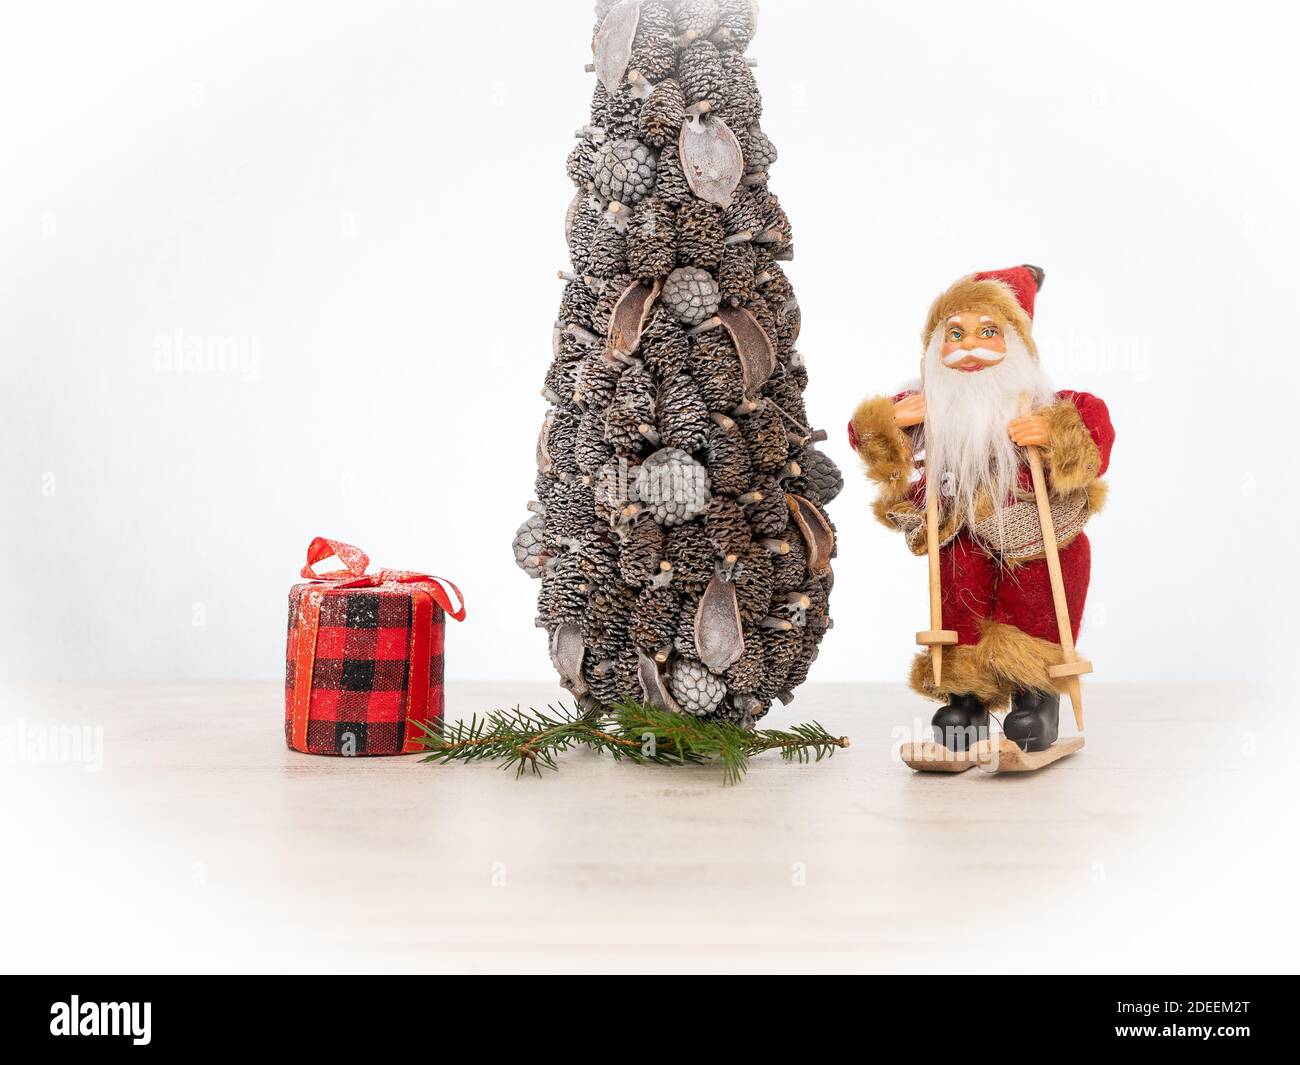 der weihnachtsmann auf Skiern steht neben einem weihnachtsbaum Und ein rotes Geschenk in einem Tartan kariert auf weiß Winterhintergrund Stockfoto